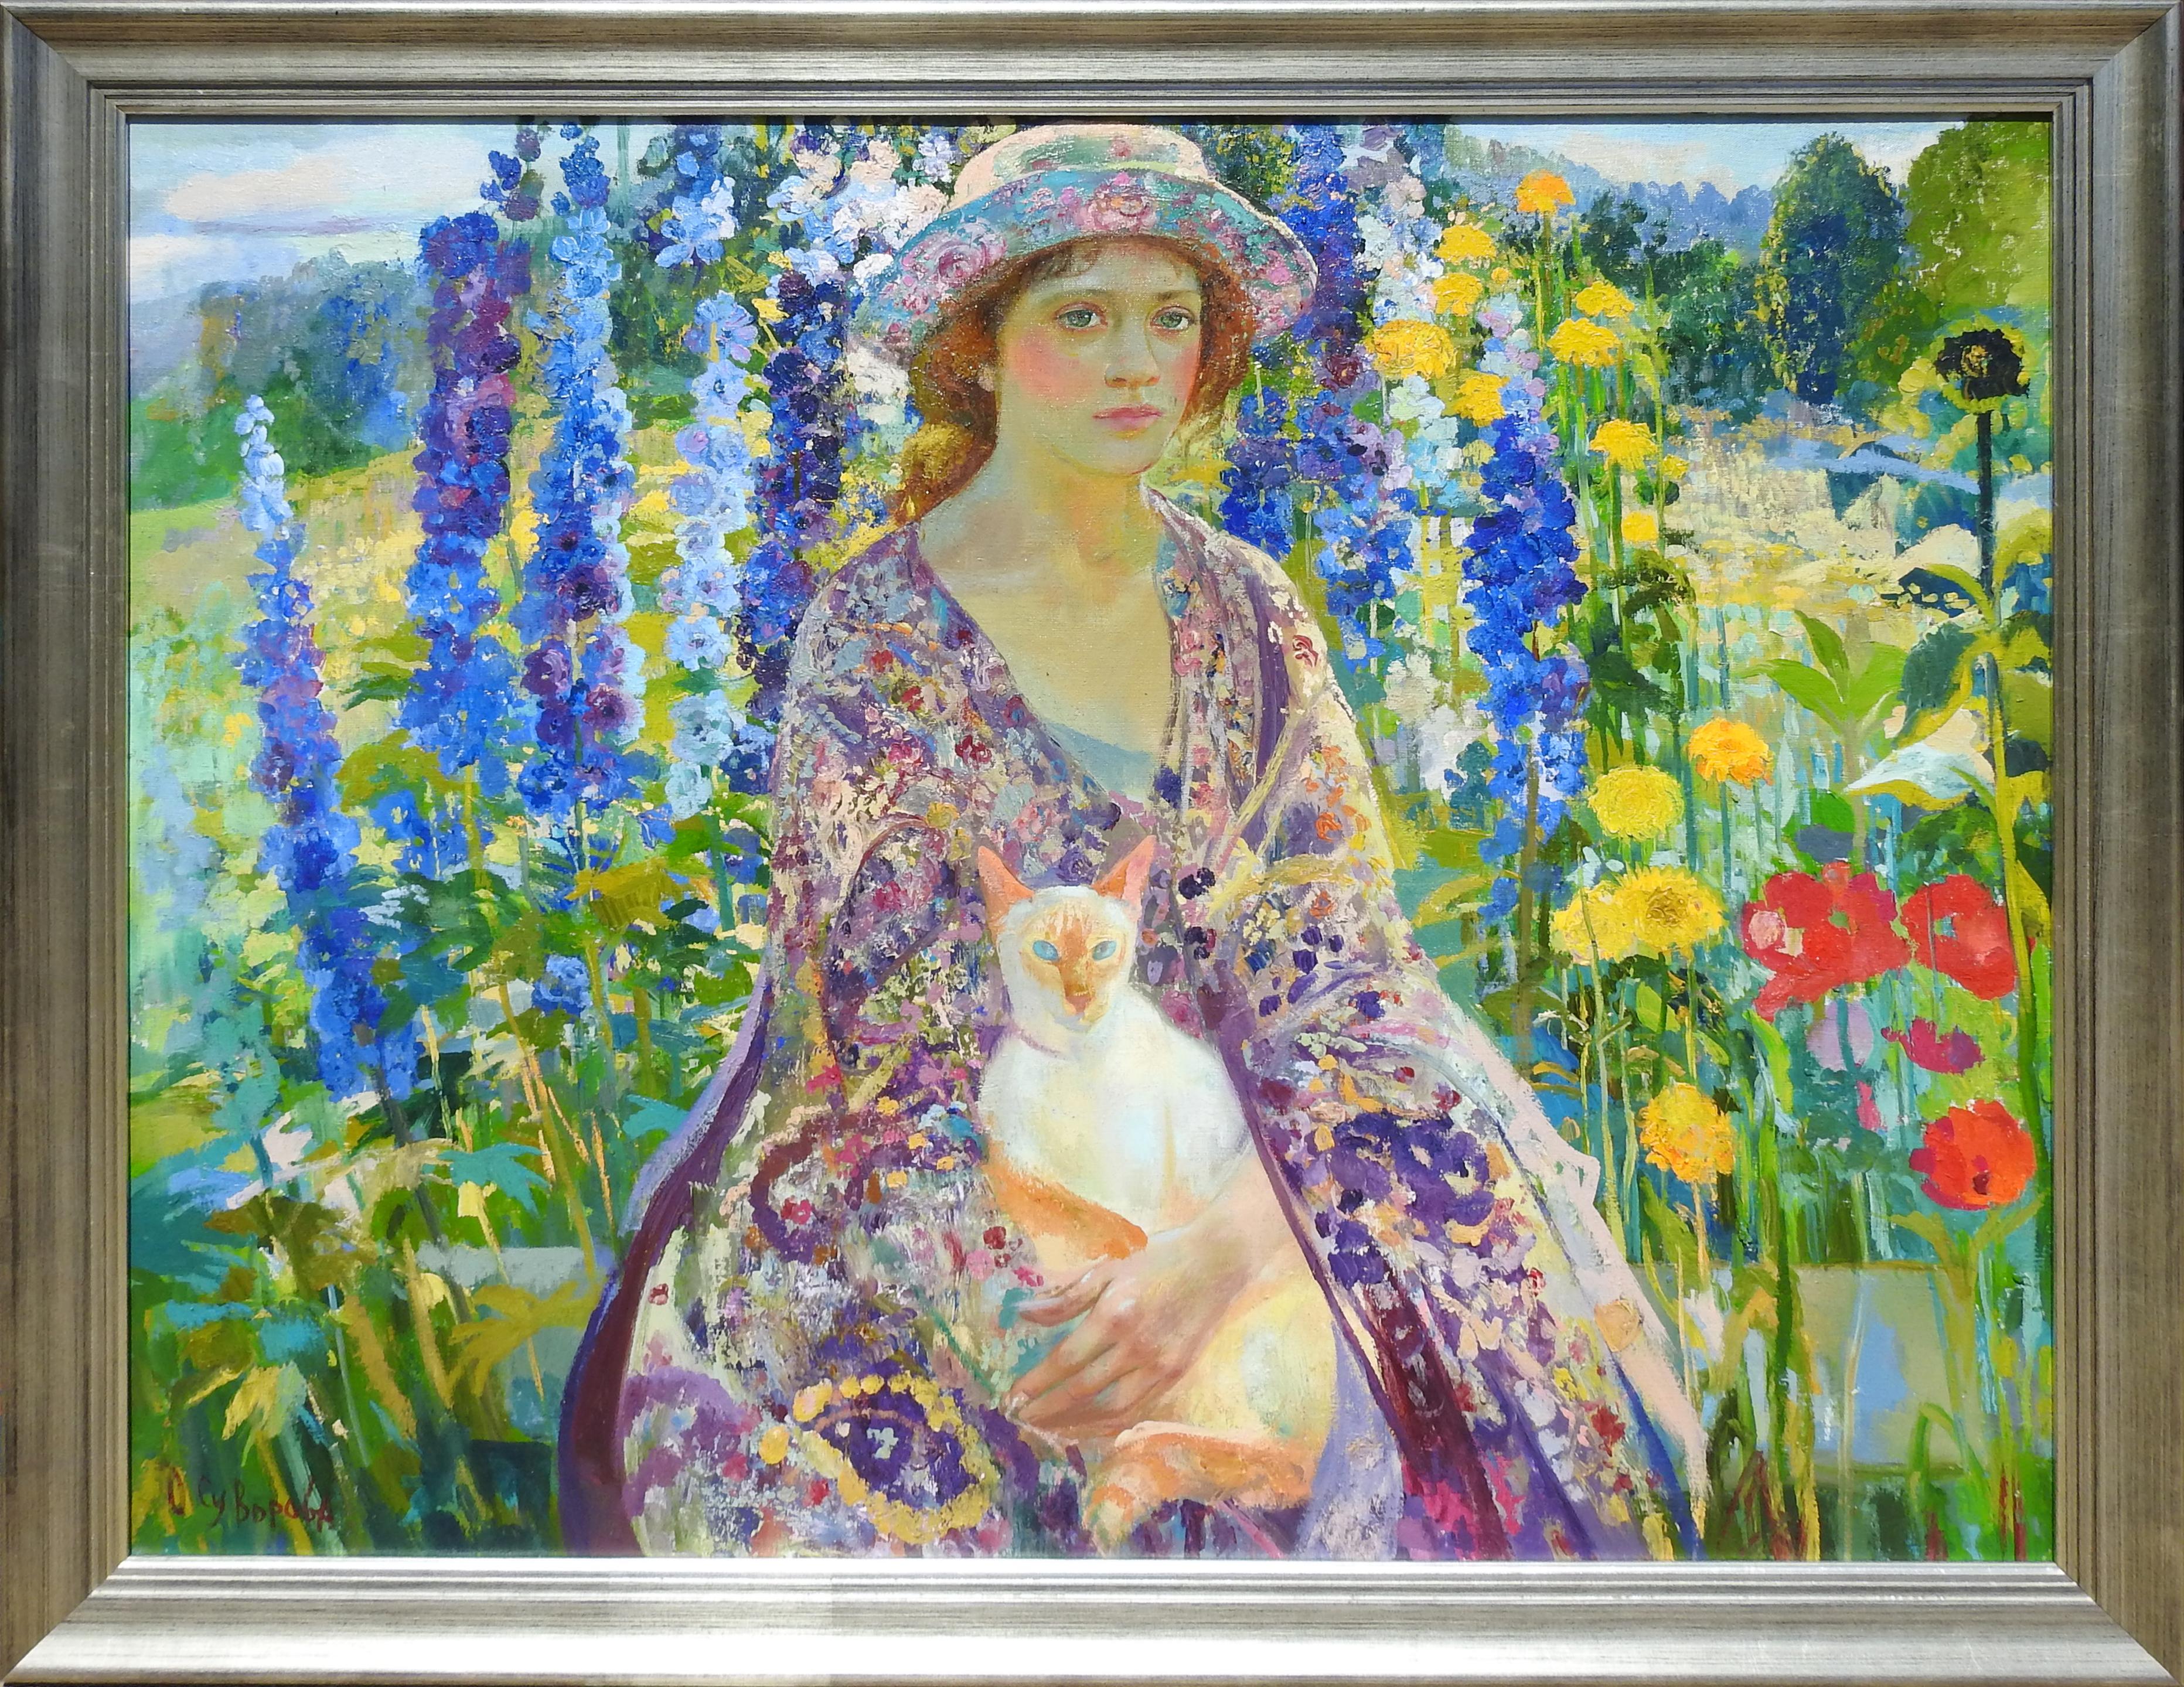 Olga Suvorava Figurative Painting - "July", Olga Suvorova, Oil on Canvas, Figurative Realism, Landscape, 37x46 